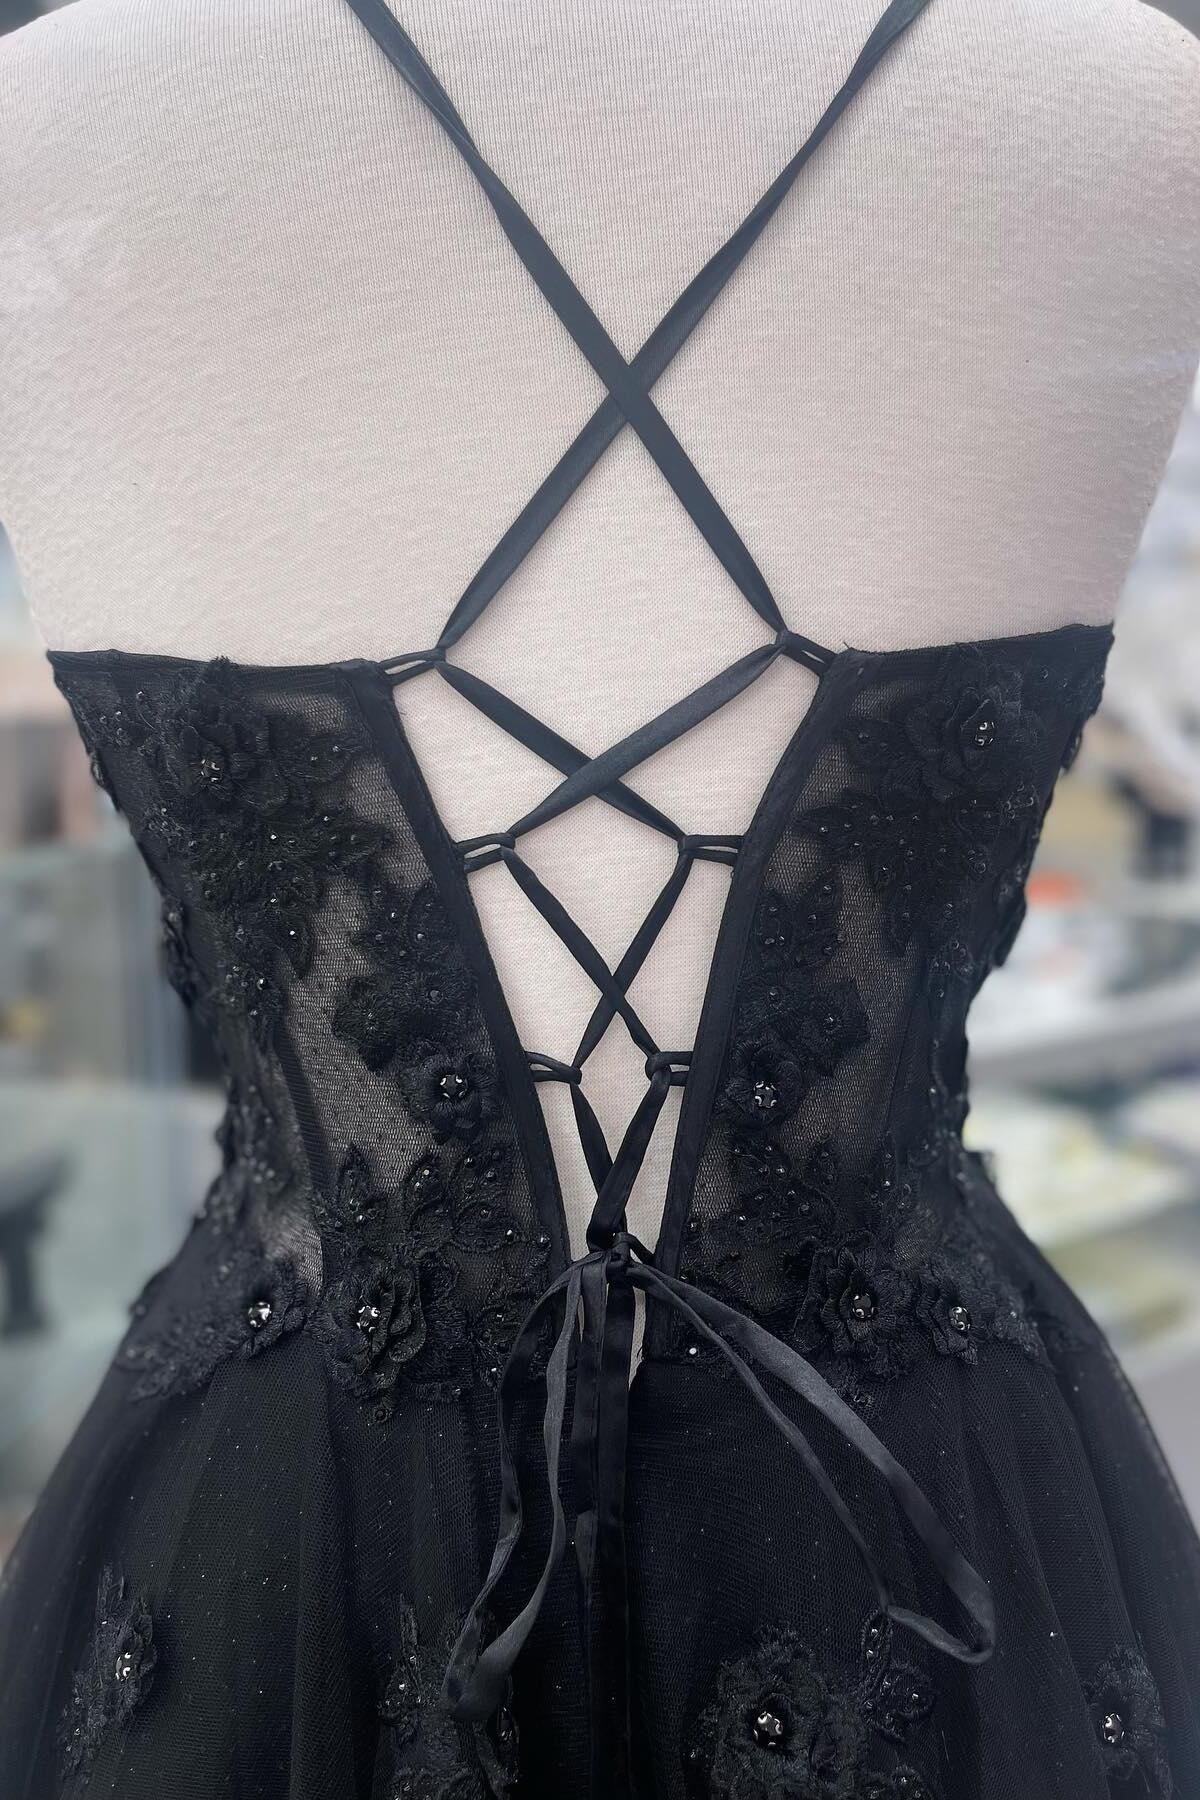 Scoop Lace Appliques Black A-line Long Formal Dress